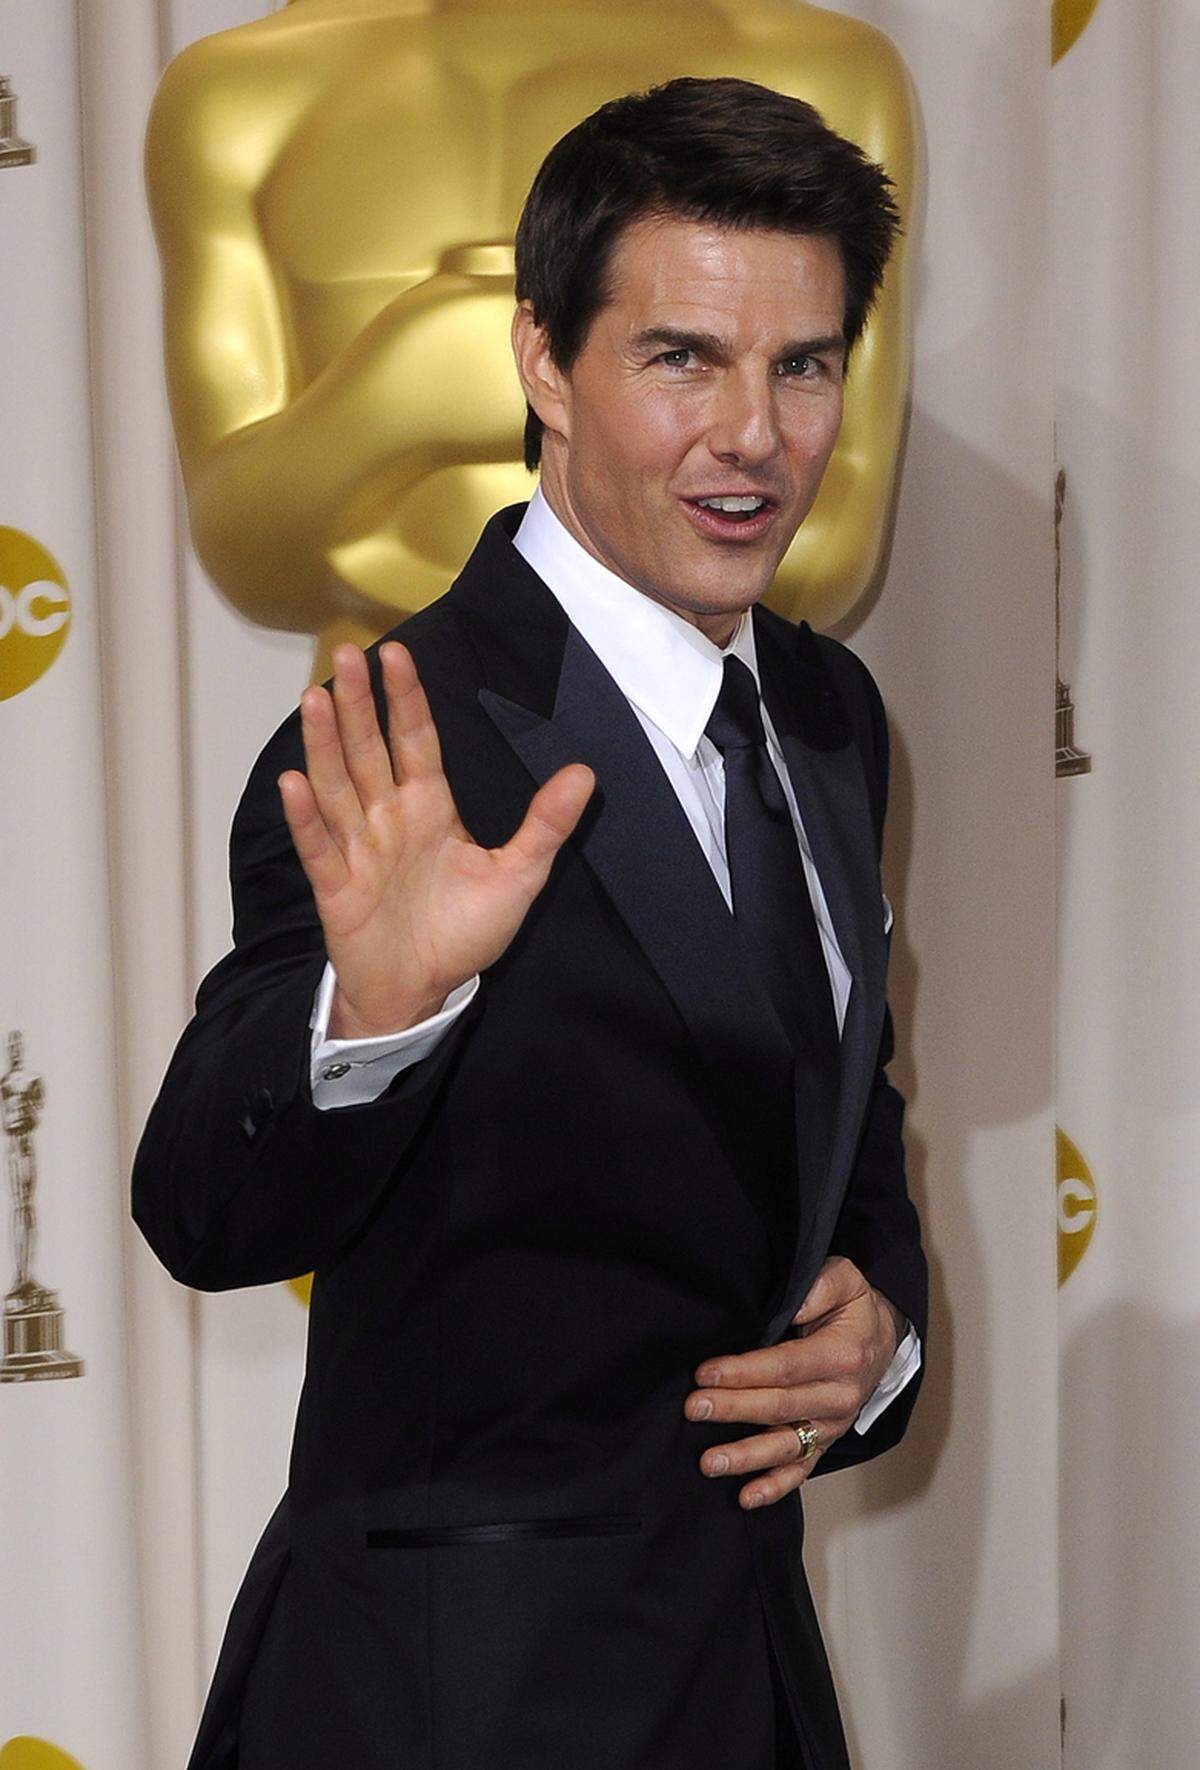 Der Film "Ghost Protocol" mit Tom Cruise in der Hauptprolle spielte 700 Millionen Dollar ein. Sein Einfluss ist in Hollywood also nicht zu unterschätzen und so schaffte er es in der Platzierung auf den 9. Rang.